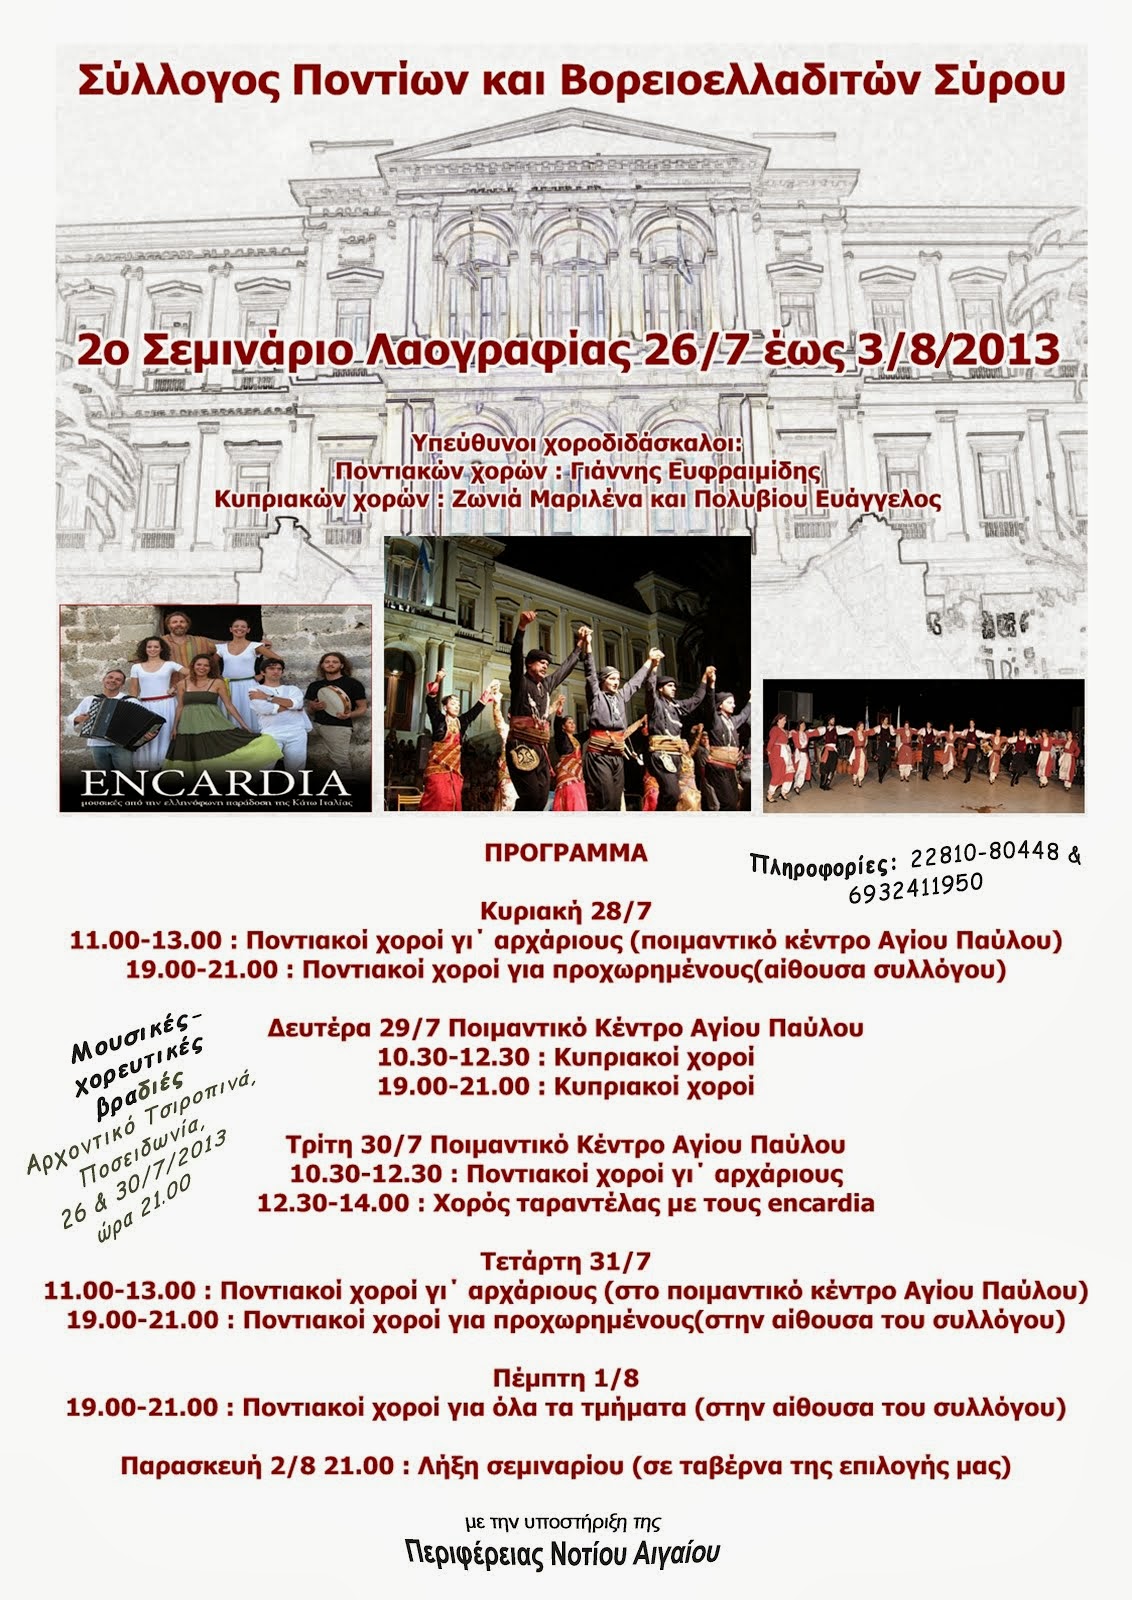 2ο Σεμινάριο Λαογραφίας. Μαθήματα χορών από Πόντο-Κύπρο-Ελληνόφωνη παράδοση Κάτω Ιταλίας